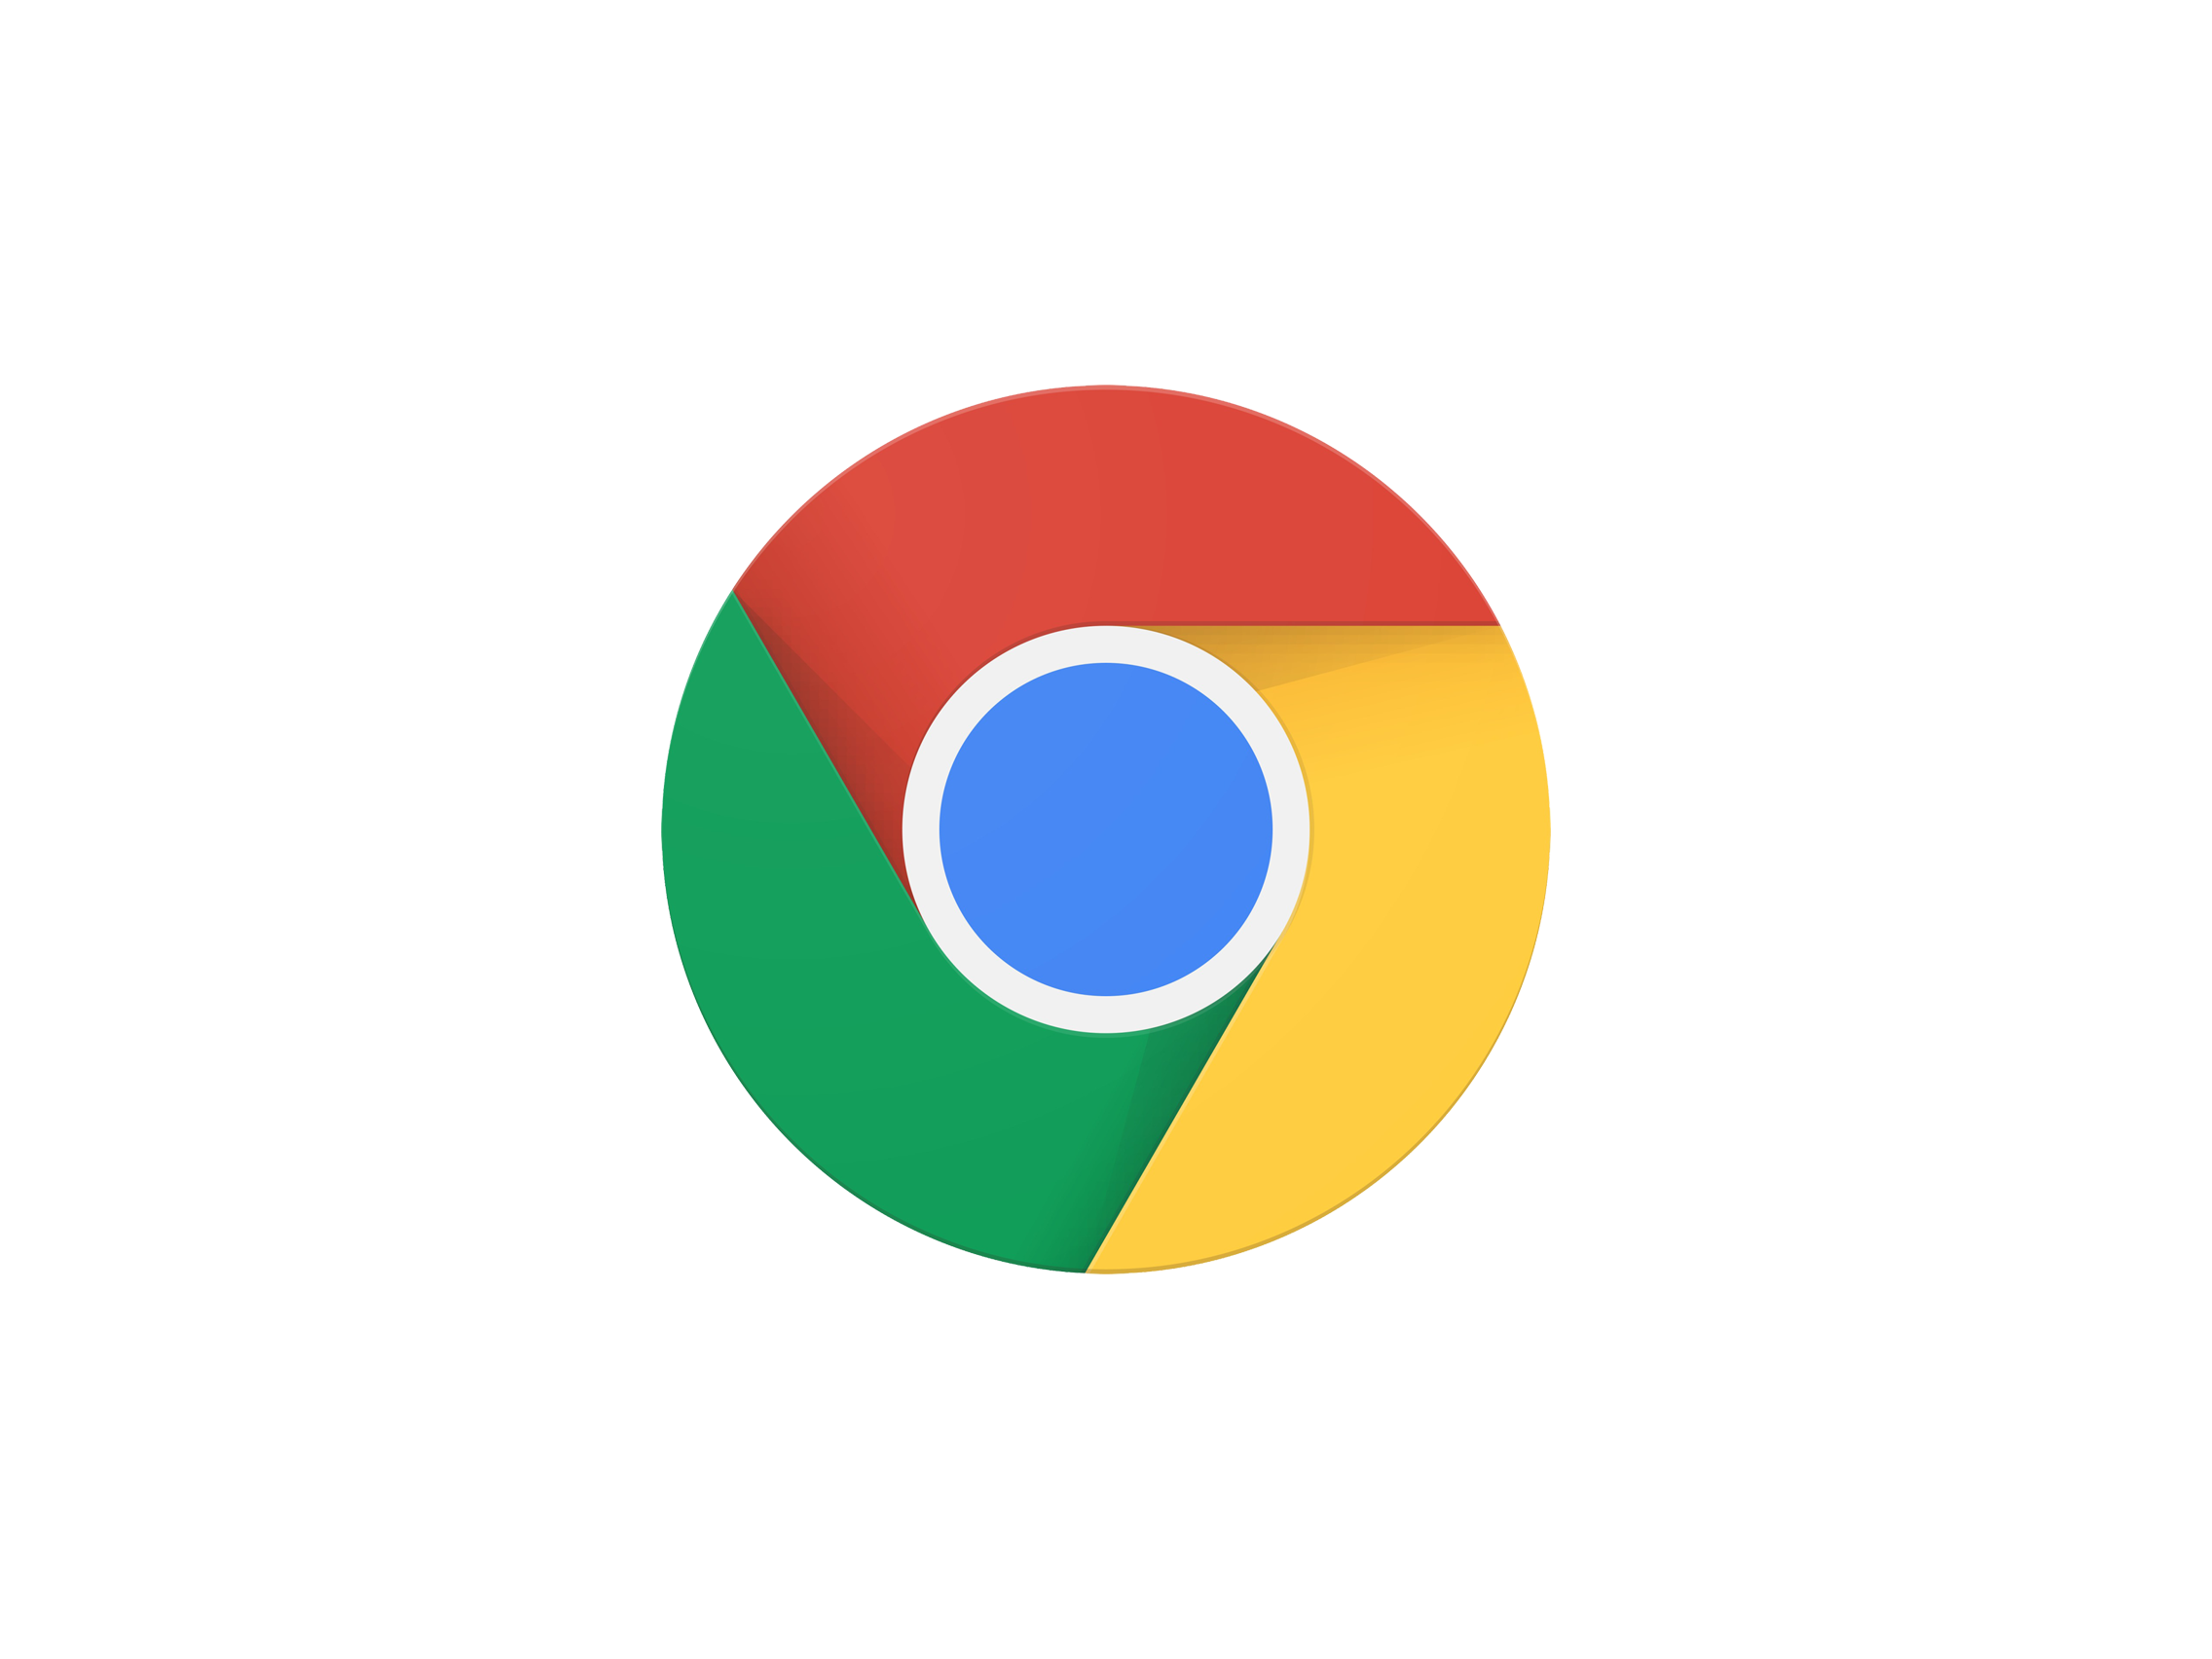 Chrome logo 2015. high definition image of chrome logo. 